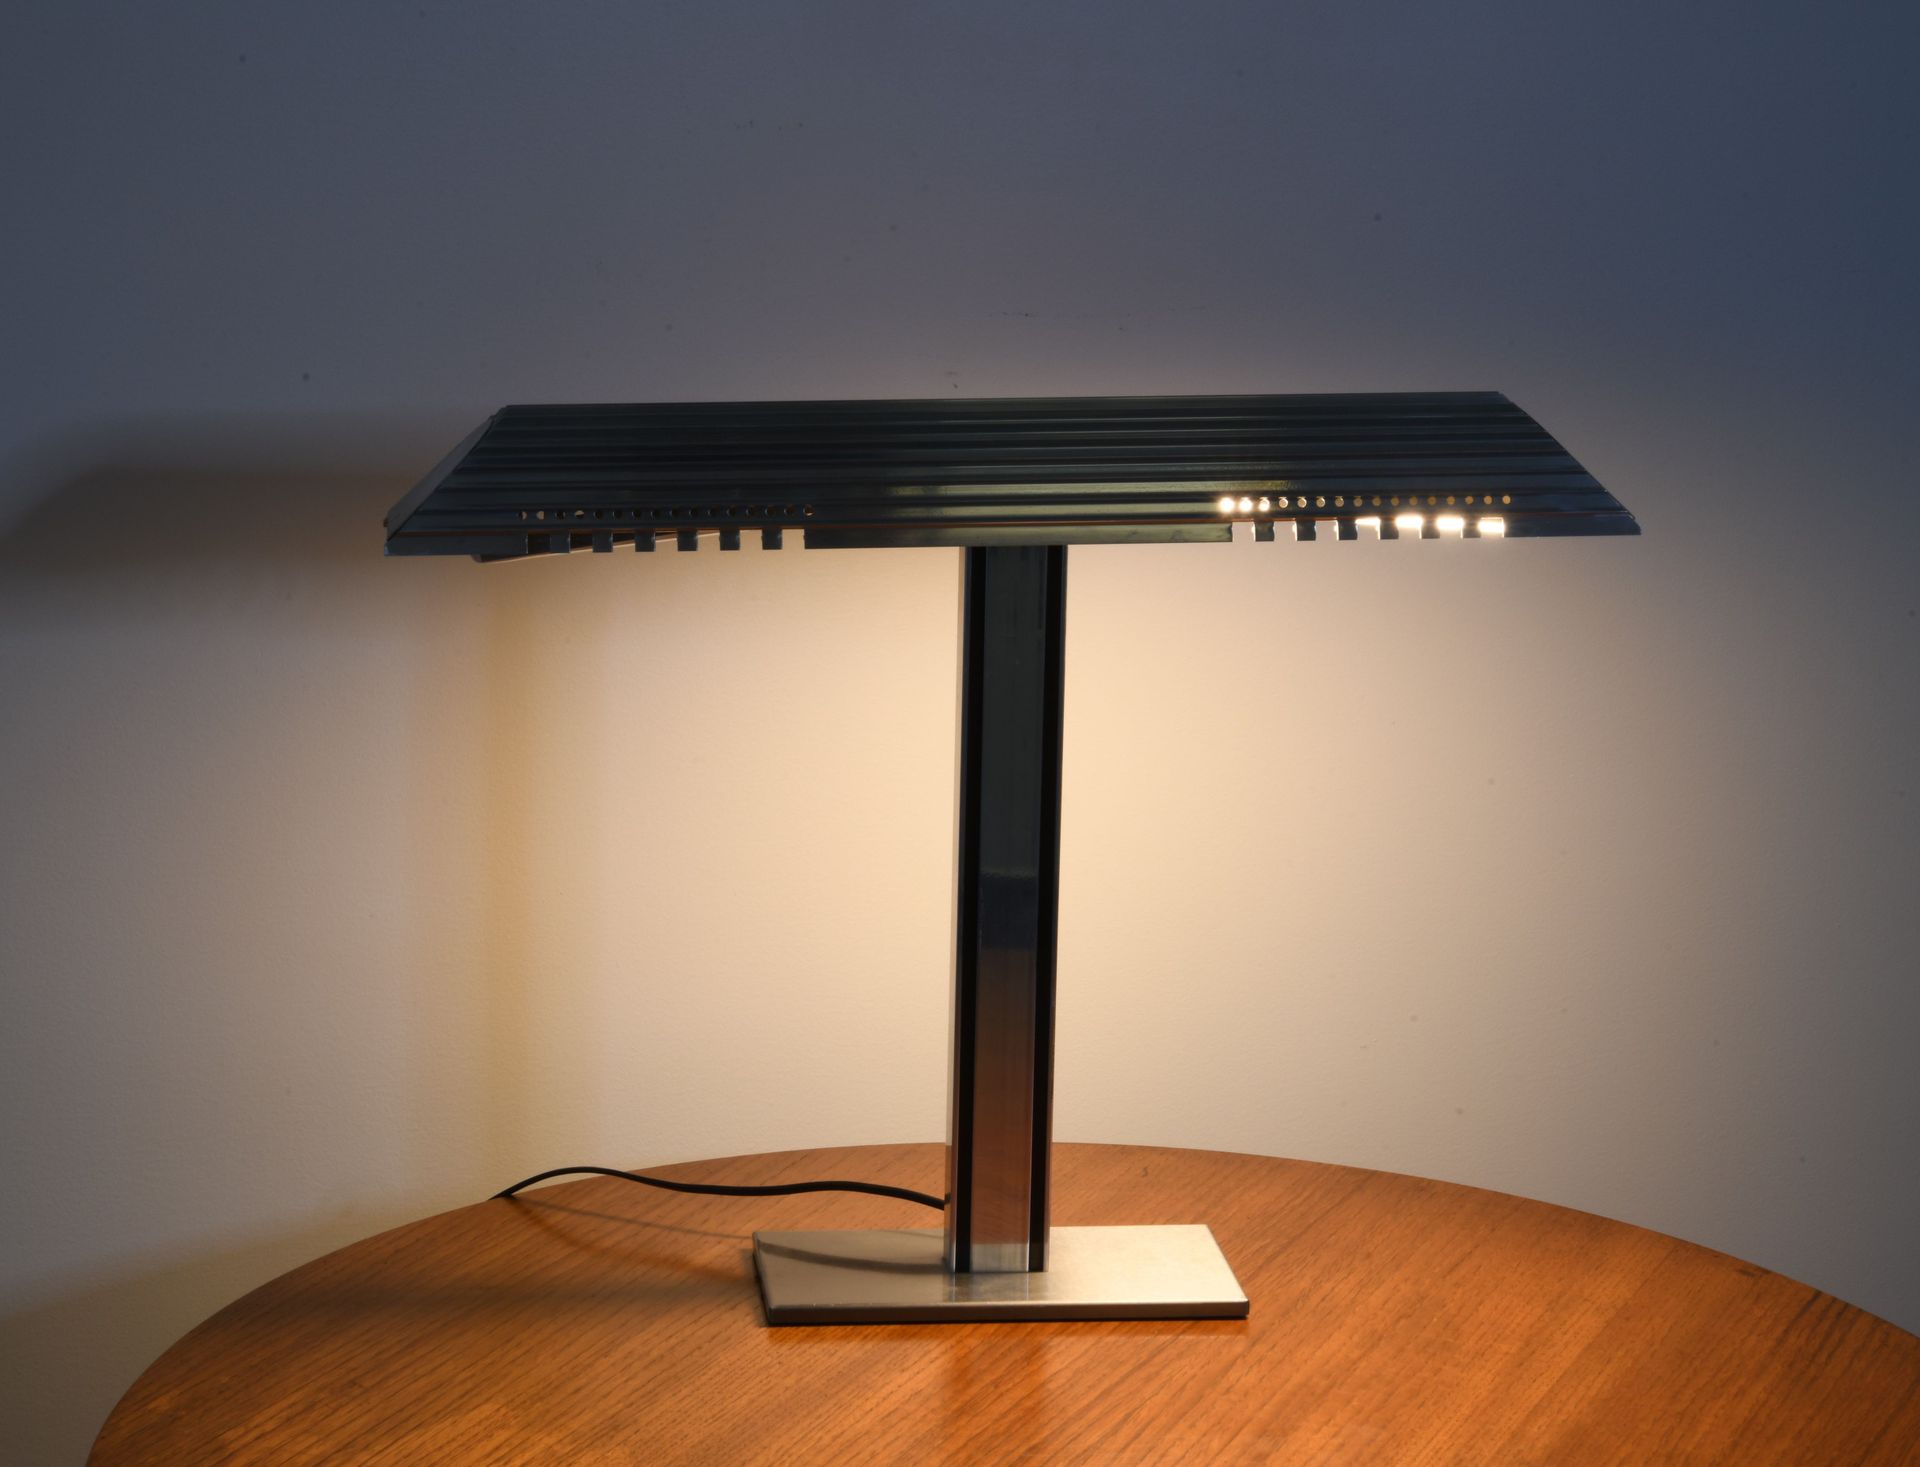 Null Chromed steel fluted desk lamp.

H: 45.5 cm; W: 59.5 cm; D: 11 cm